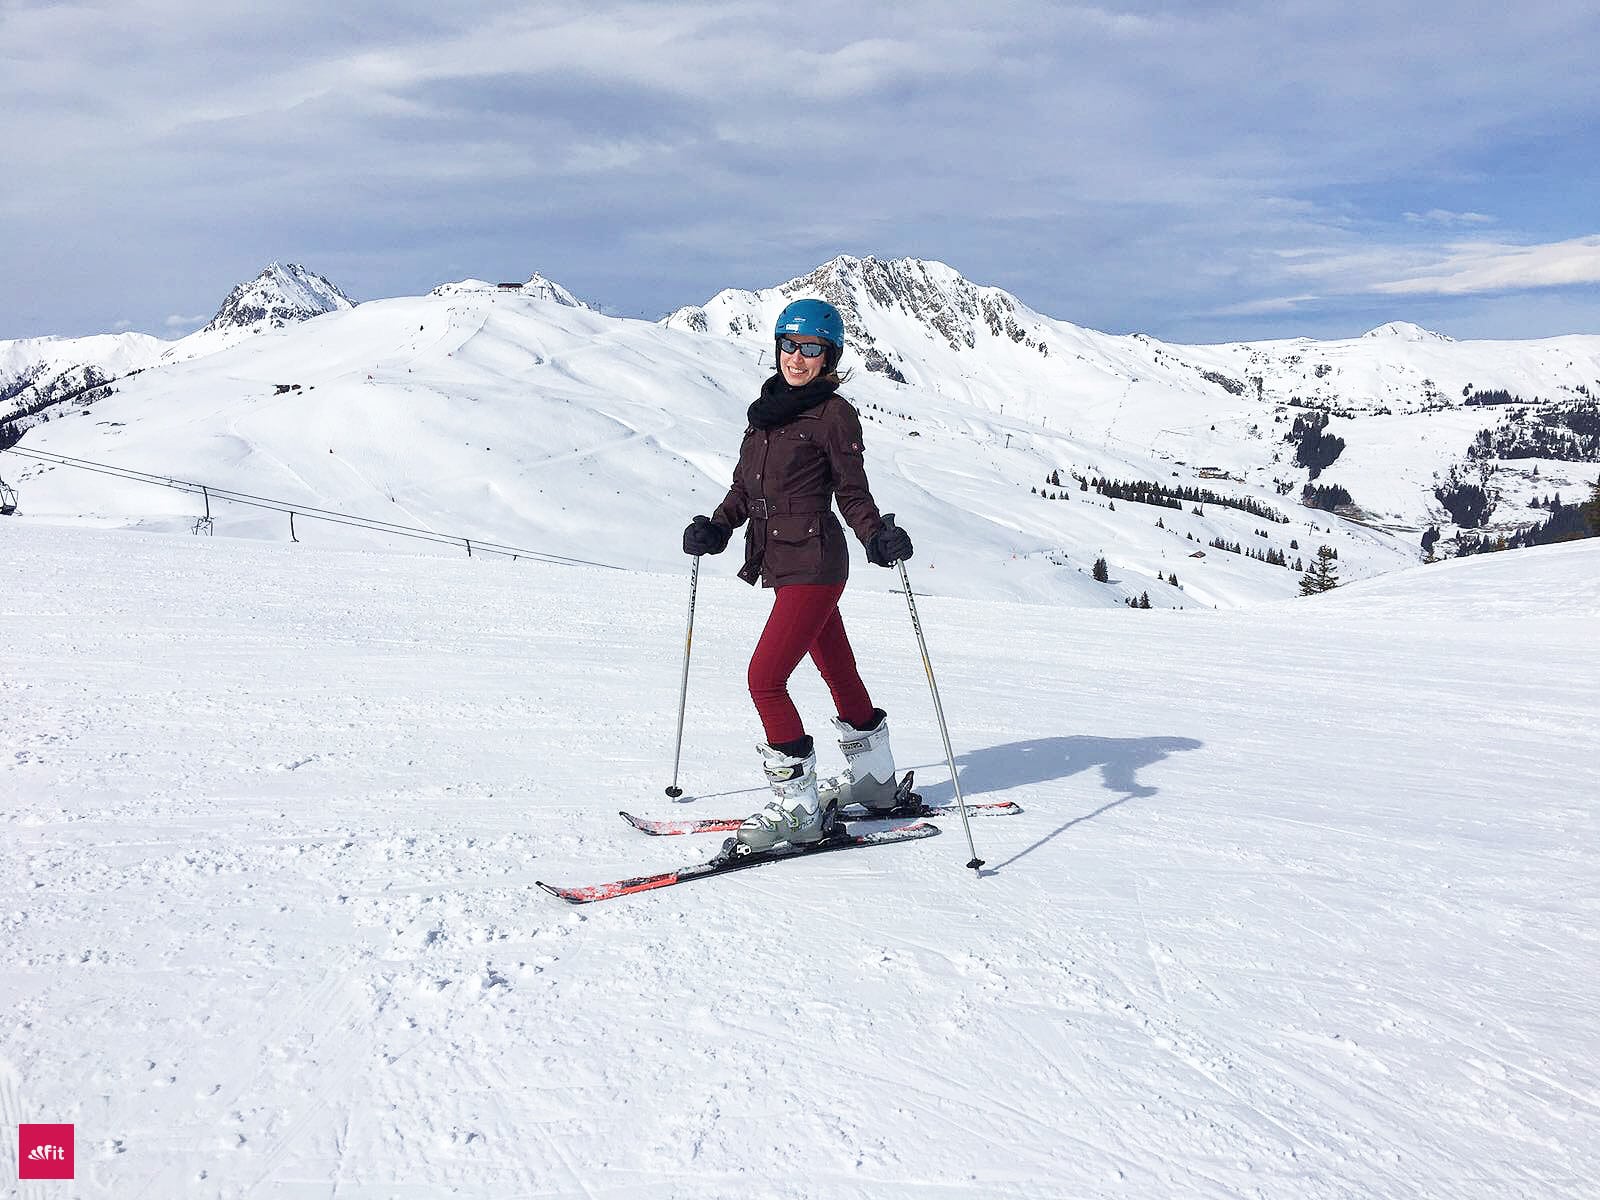 Après-Ski Survival Guide im Ski Urlaub - bei diesen Fallen solltest du aufpassen. Ich habe dir alle Tücken und Lösungen aufgelistet, Apres Ski Party Hits rausgesucht. Zudem wie viele Kalorien du beim Skifahren verbrennst. Beim Ski fahren ist das richtige Beintrainings wichtig. Achte auf deine Knie und mache diese Übungen. Falls du einen Kater von der Aires Ski Party hast, hilft dir dieses Superfood Pulver #ski